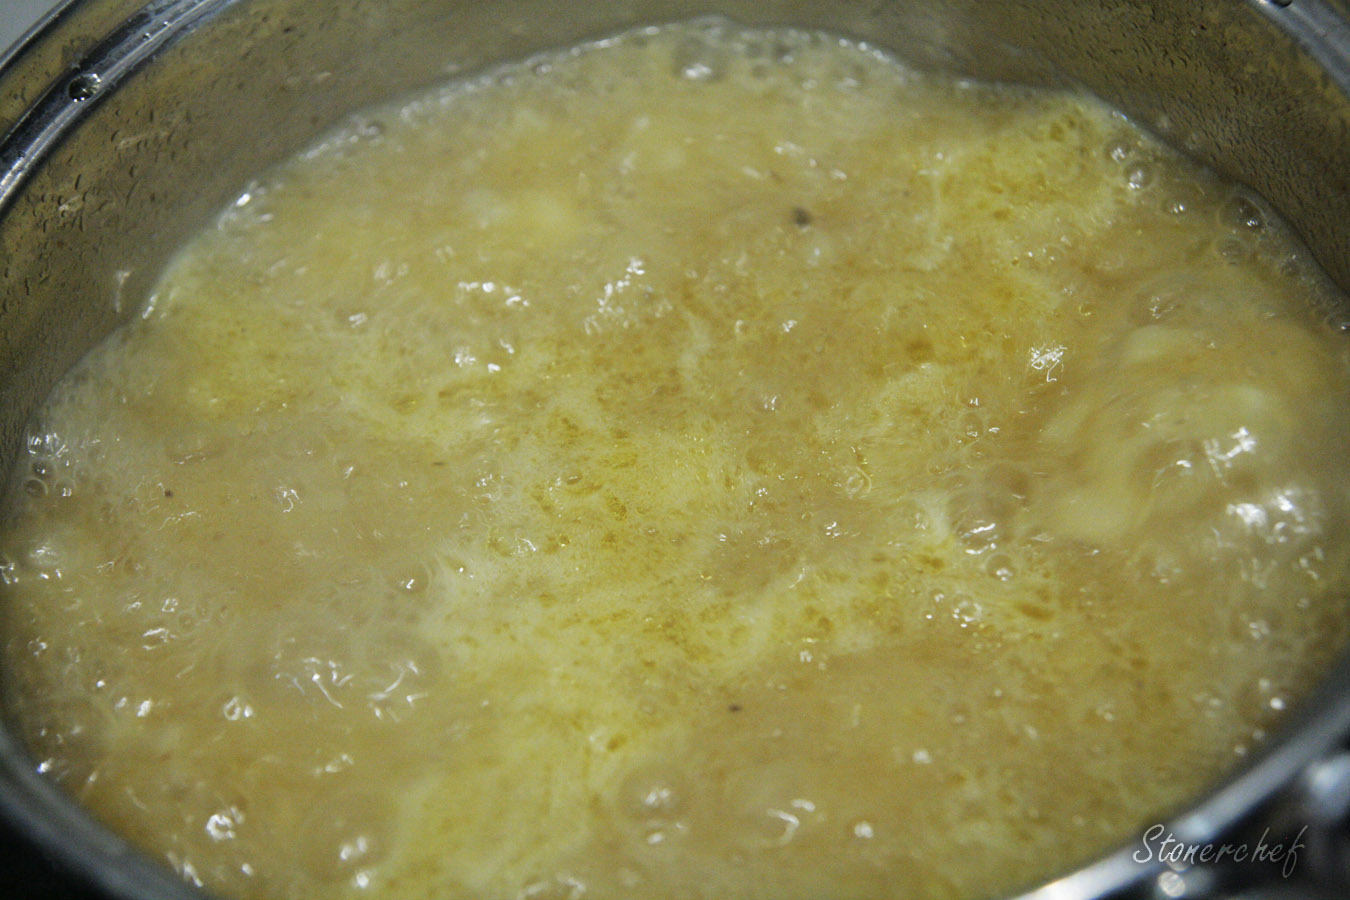 zupa czosnkowa